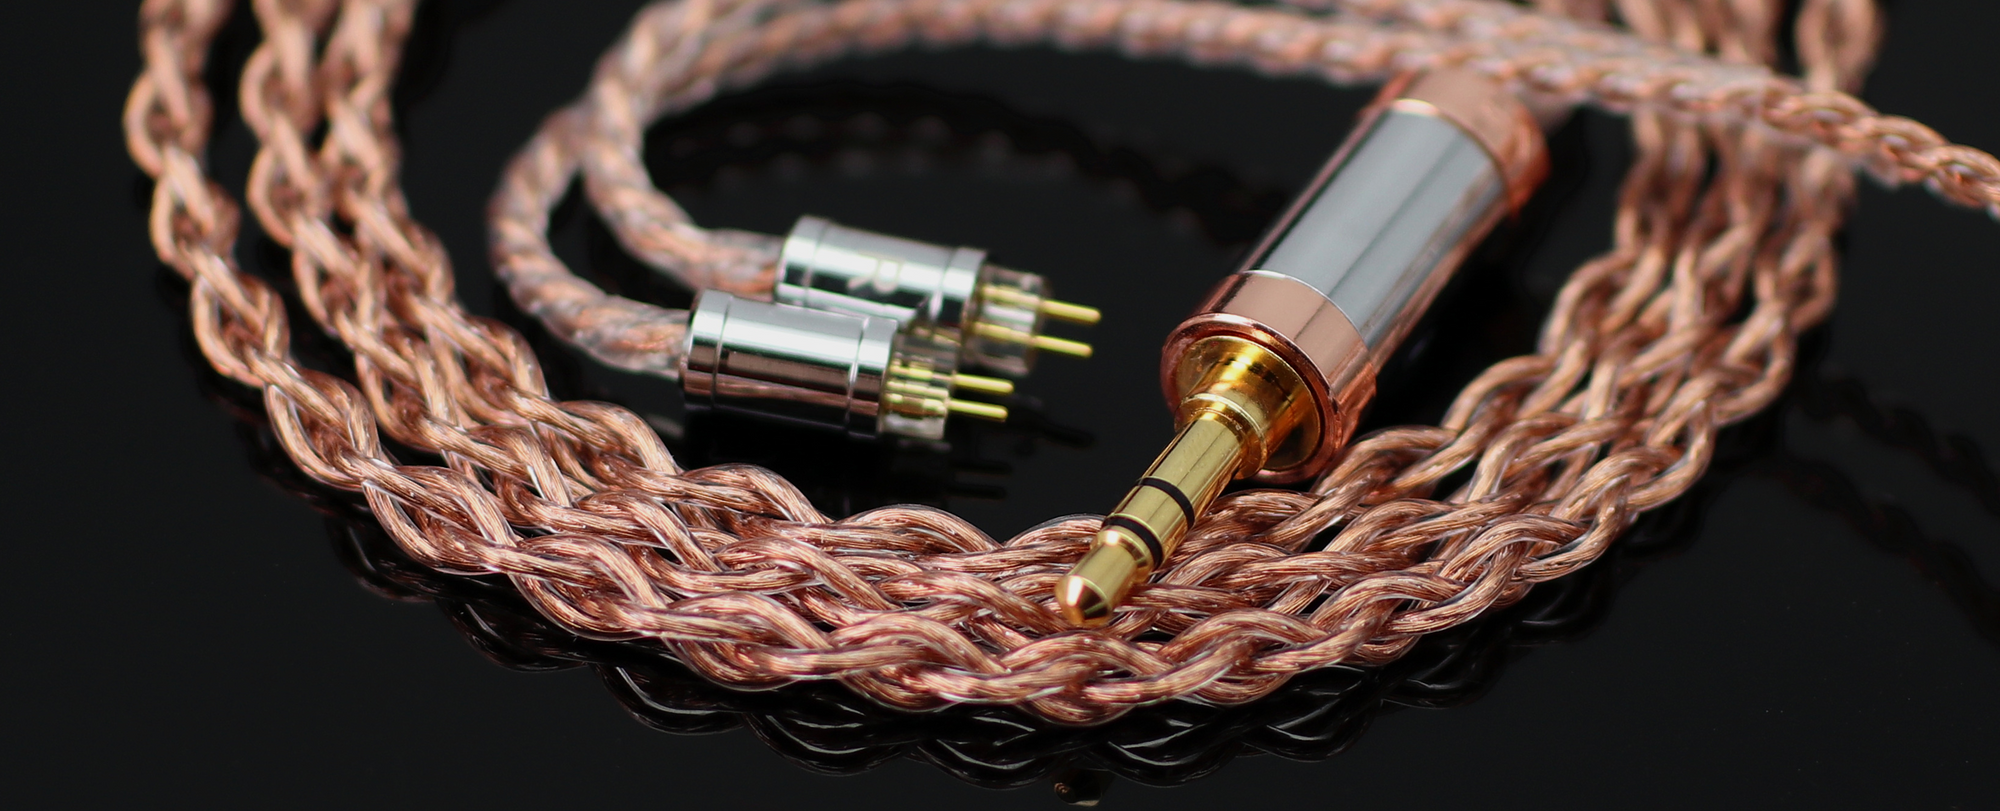 Arete Series MKV Premium Upgrade Cable for Headphone | IEM– Null Audio